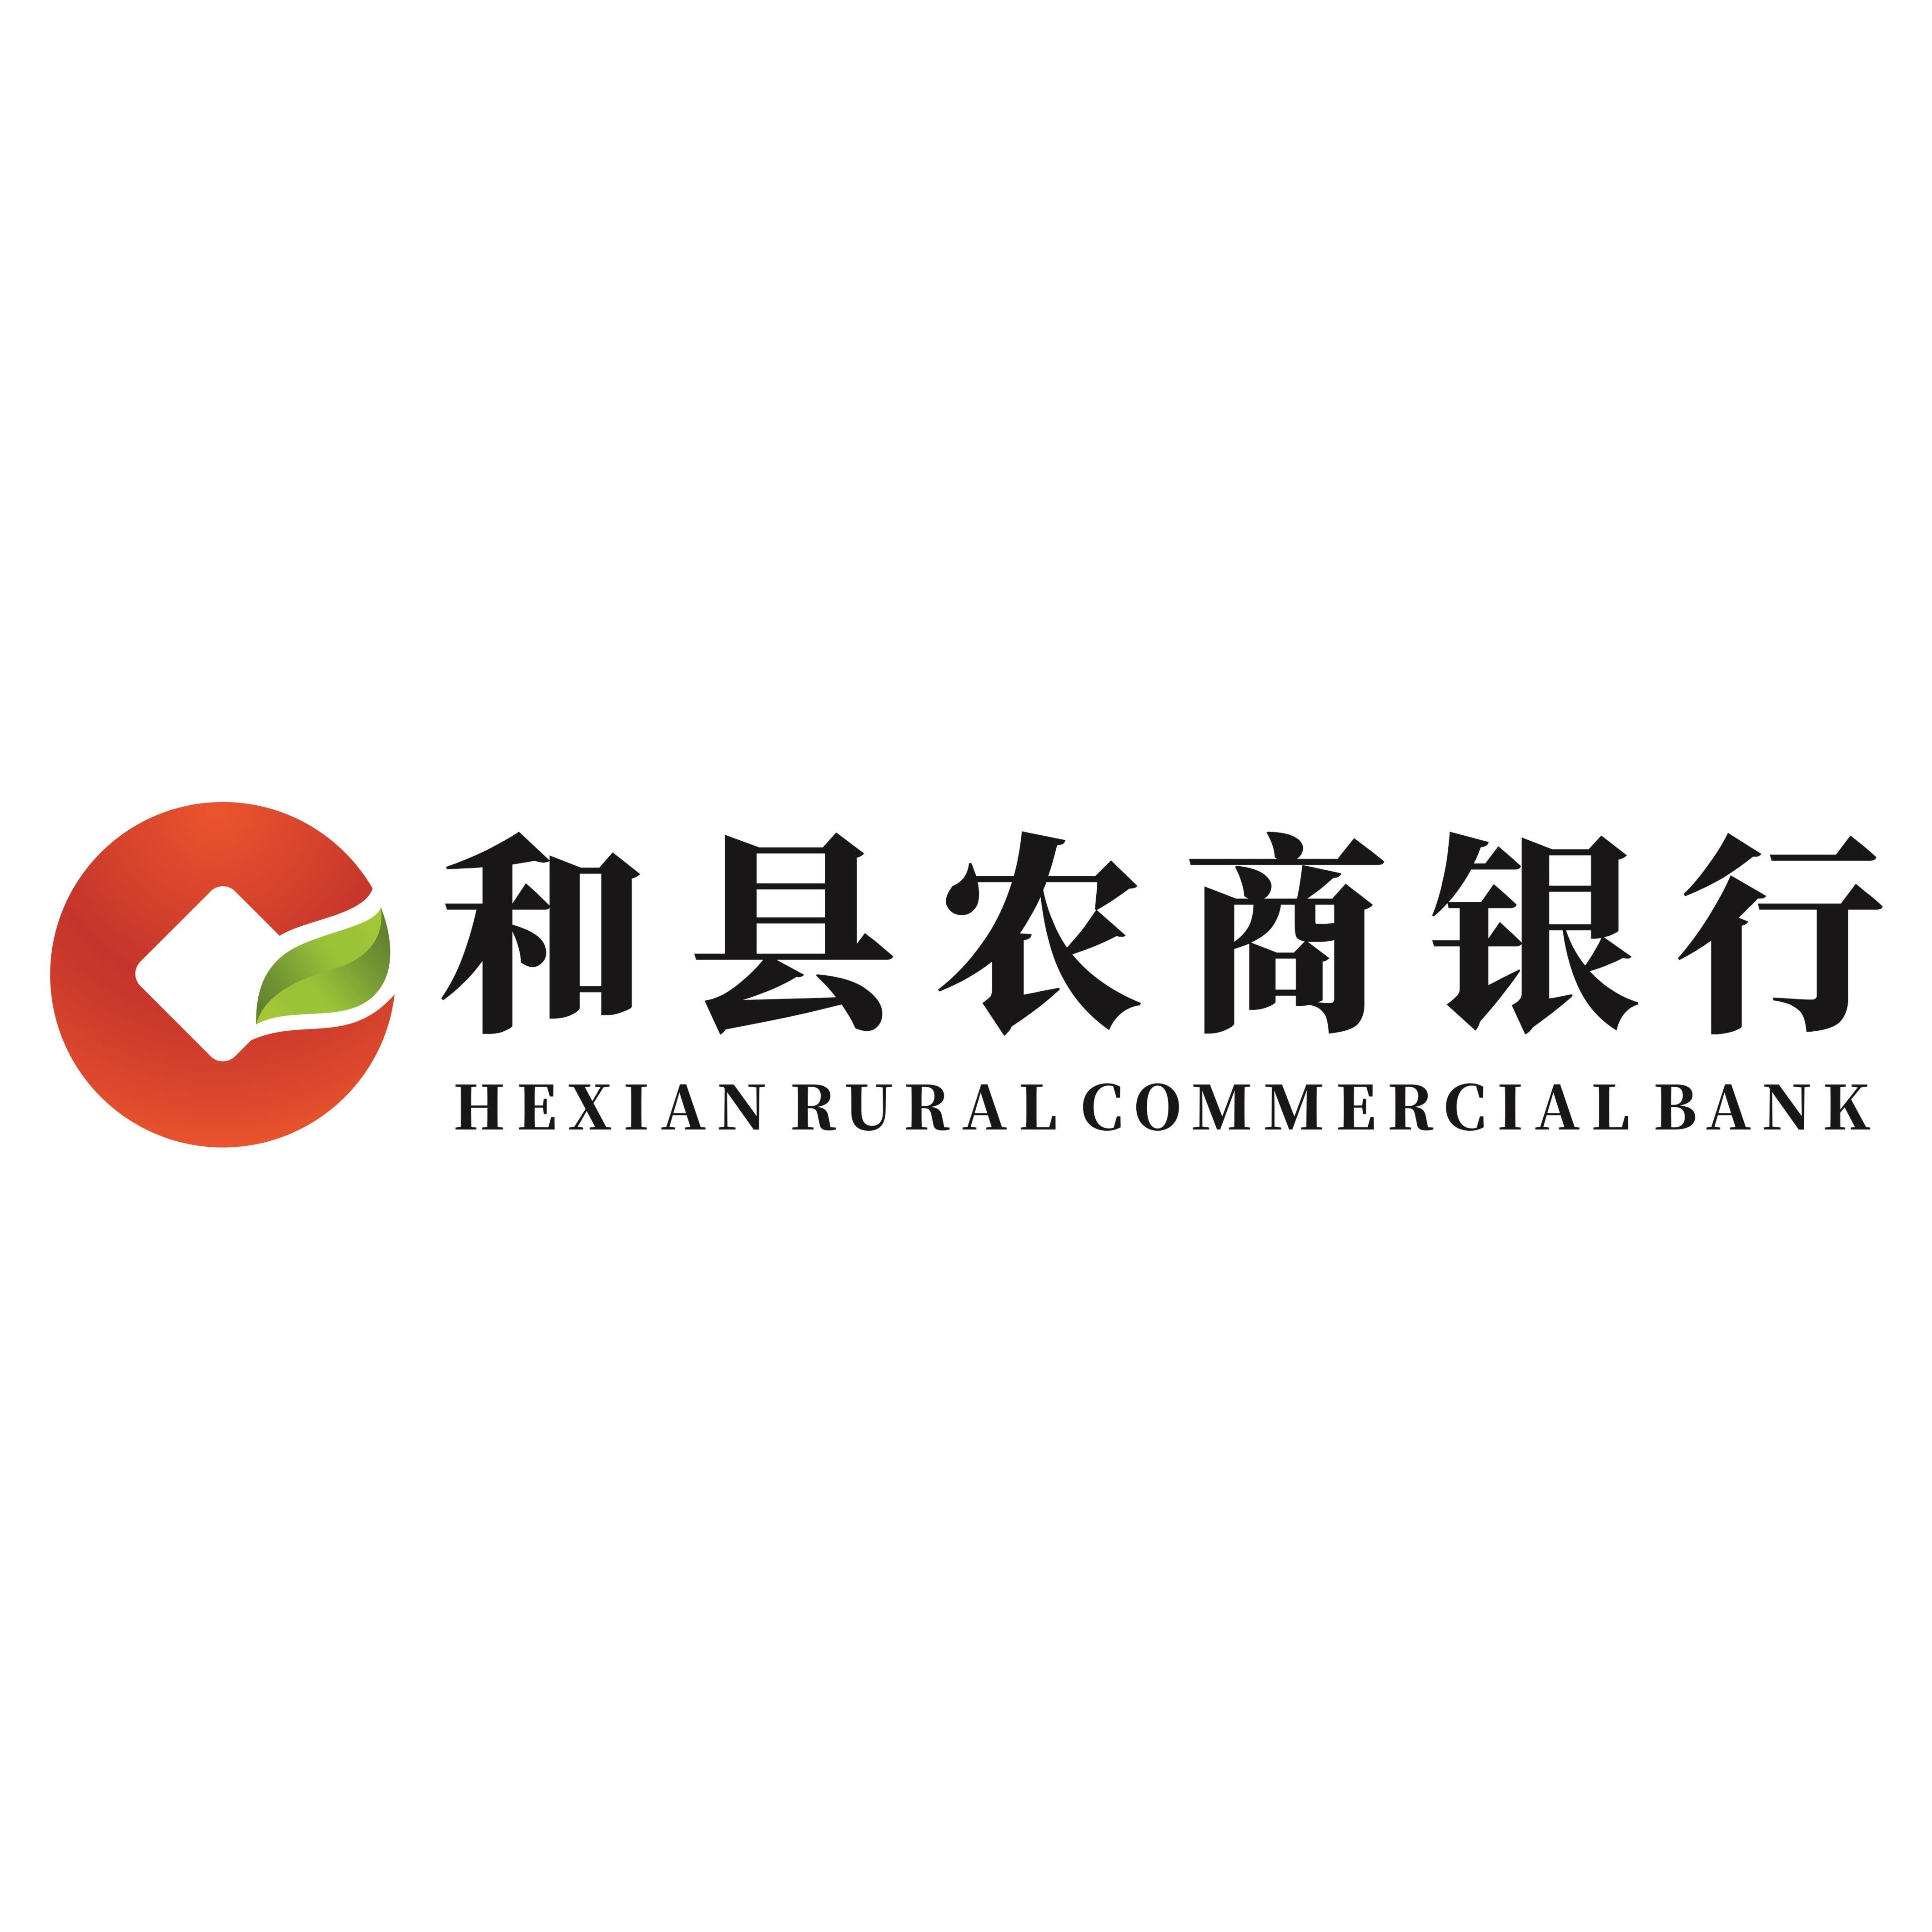 安徽和县农村商业银行股份有限公司